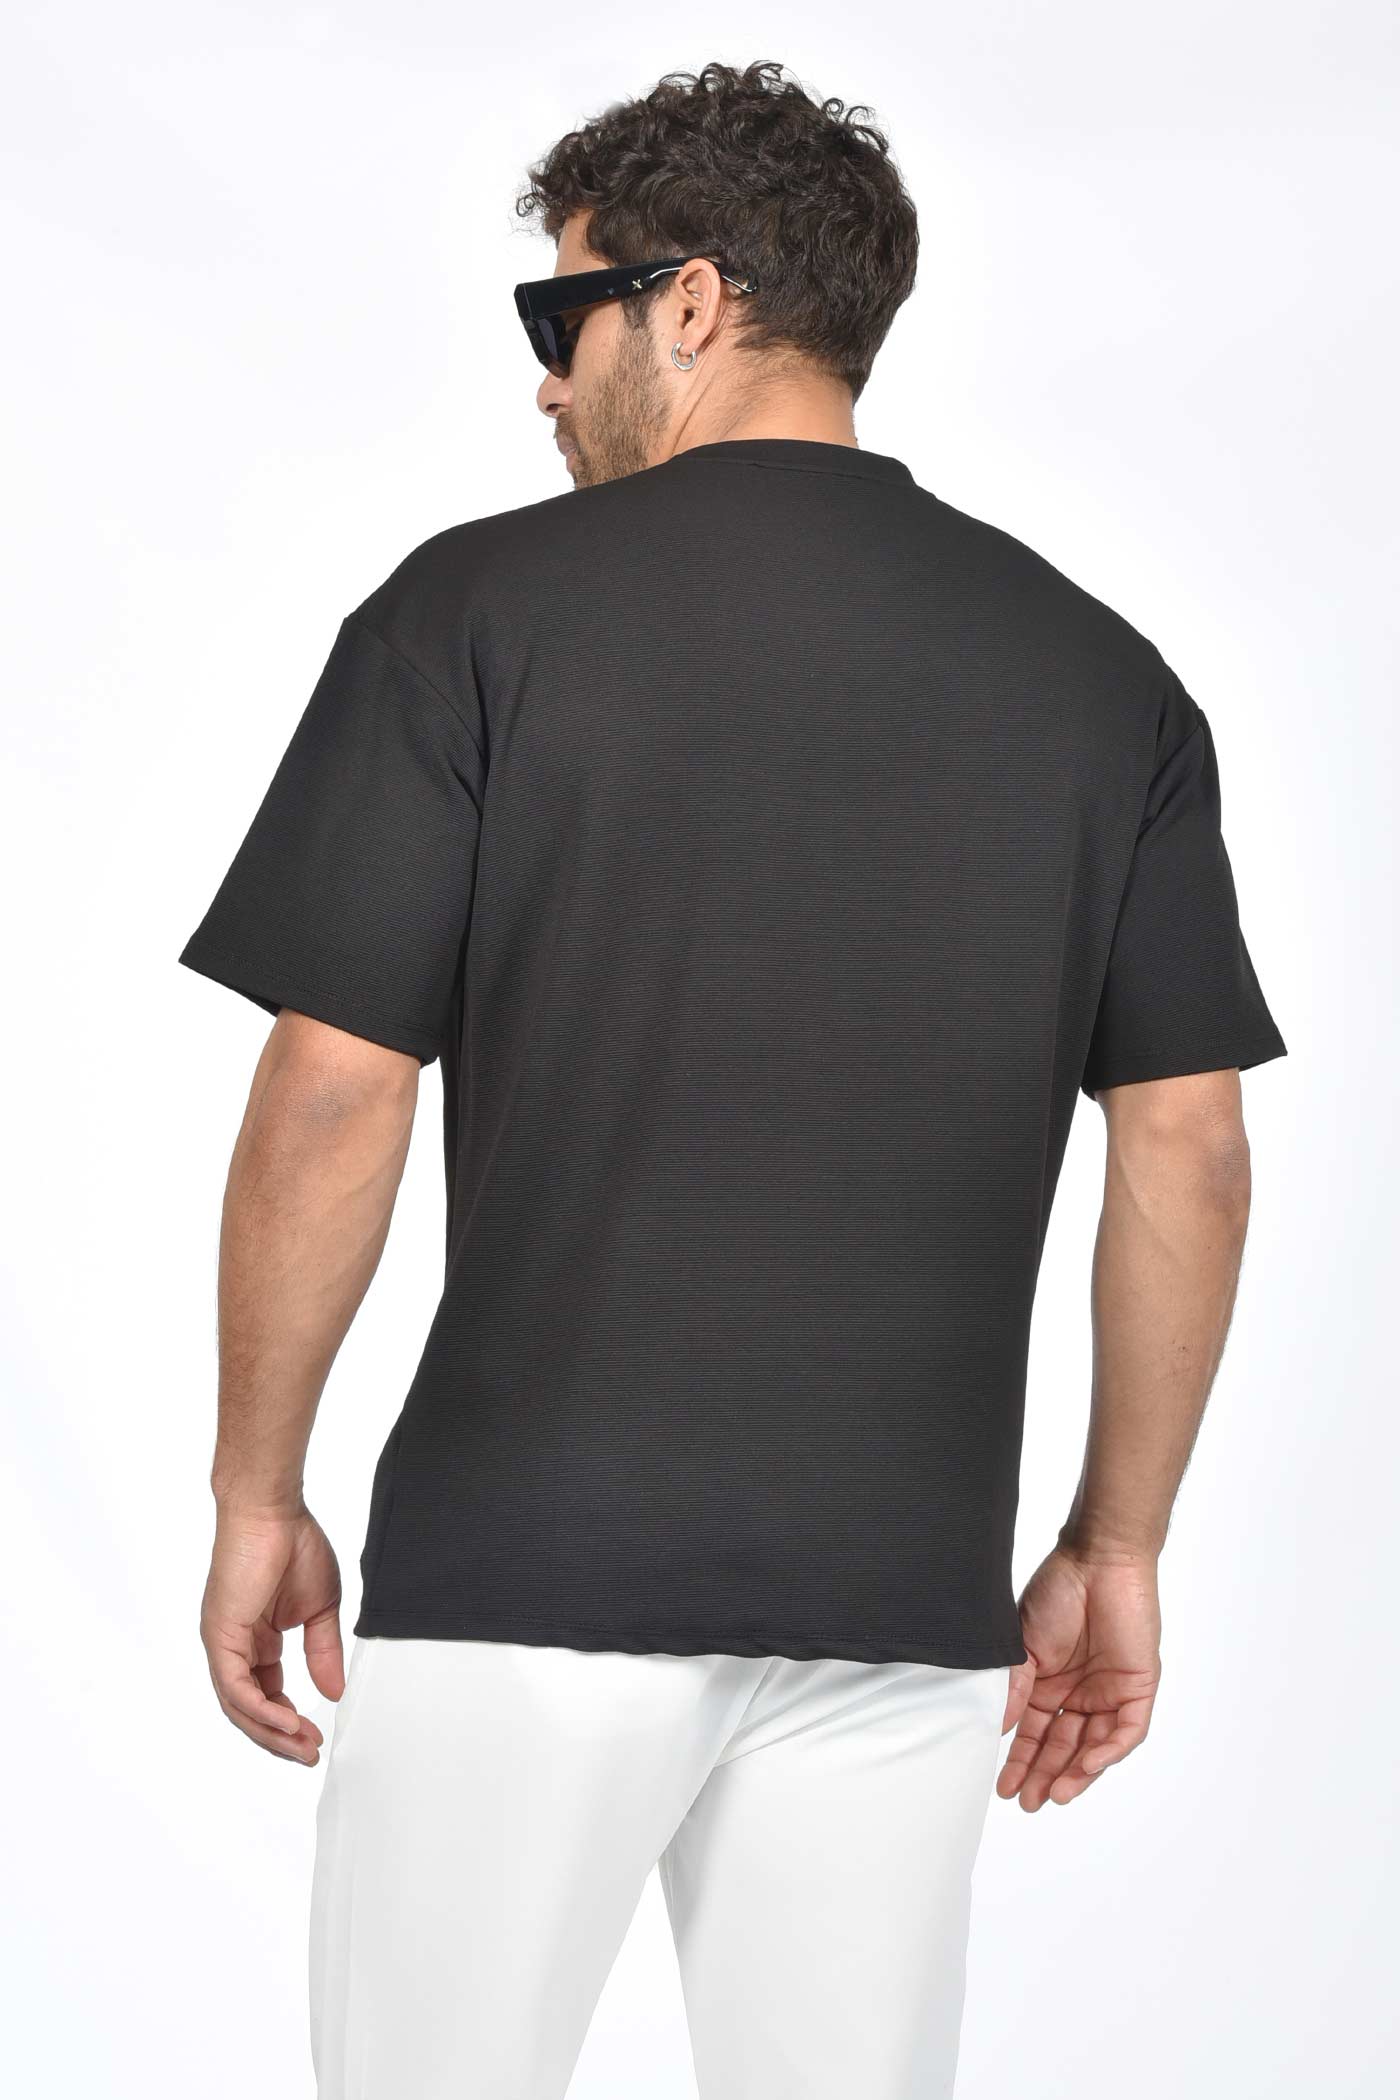 ανδρικό-oversized-t-shirt-με-μεγάλη-εξωτερική-τσέπη